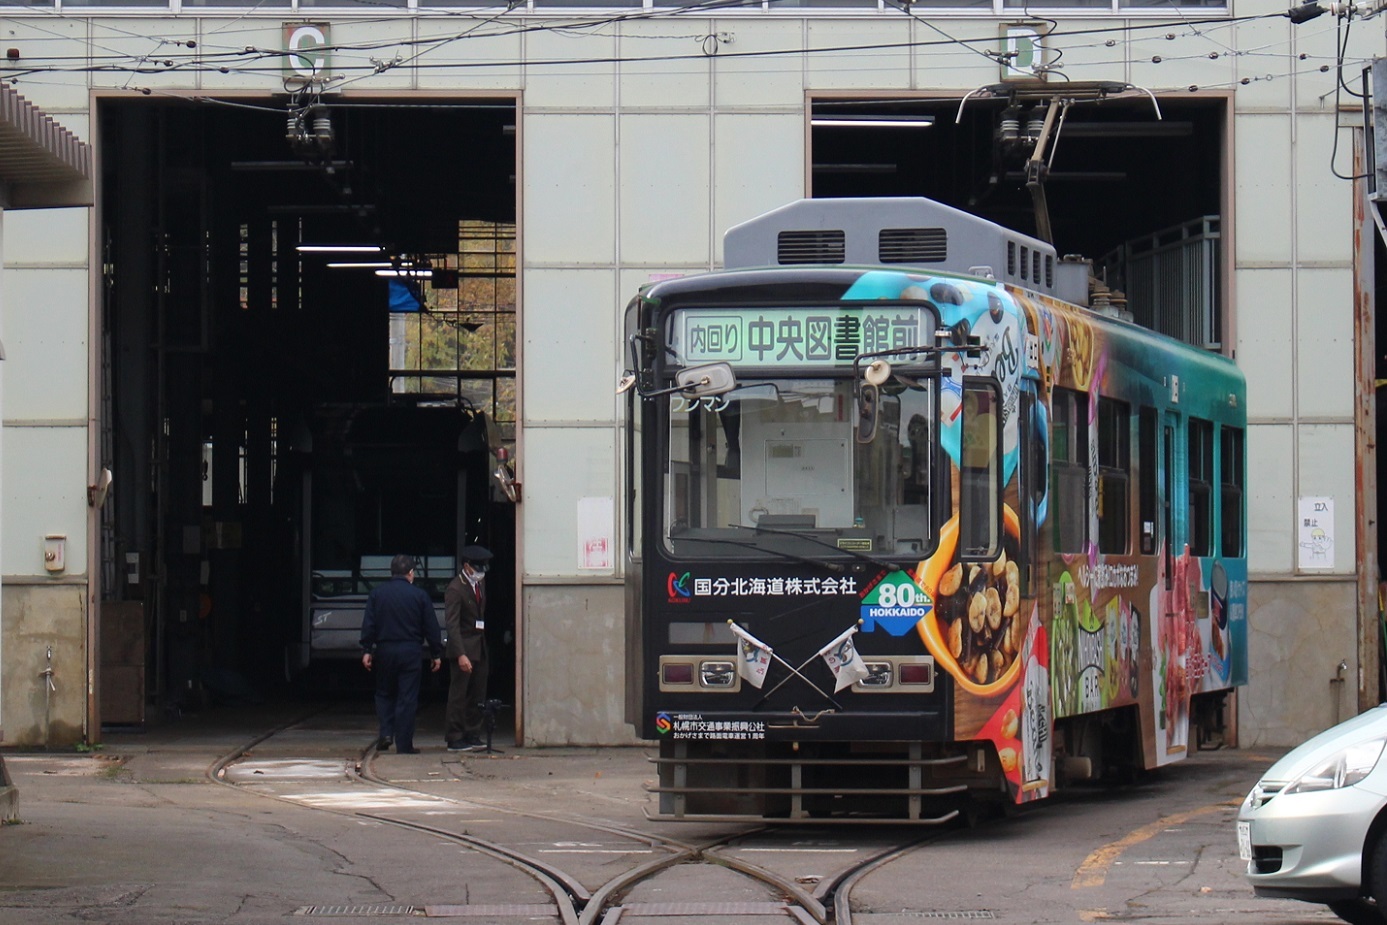 札幌市電M101ラストランa13